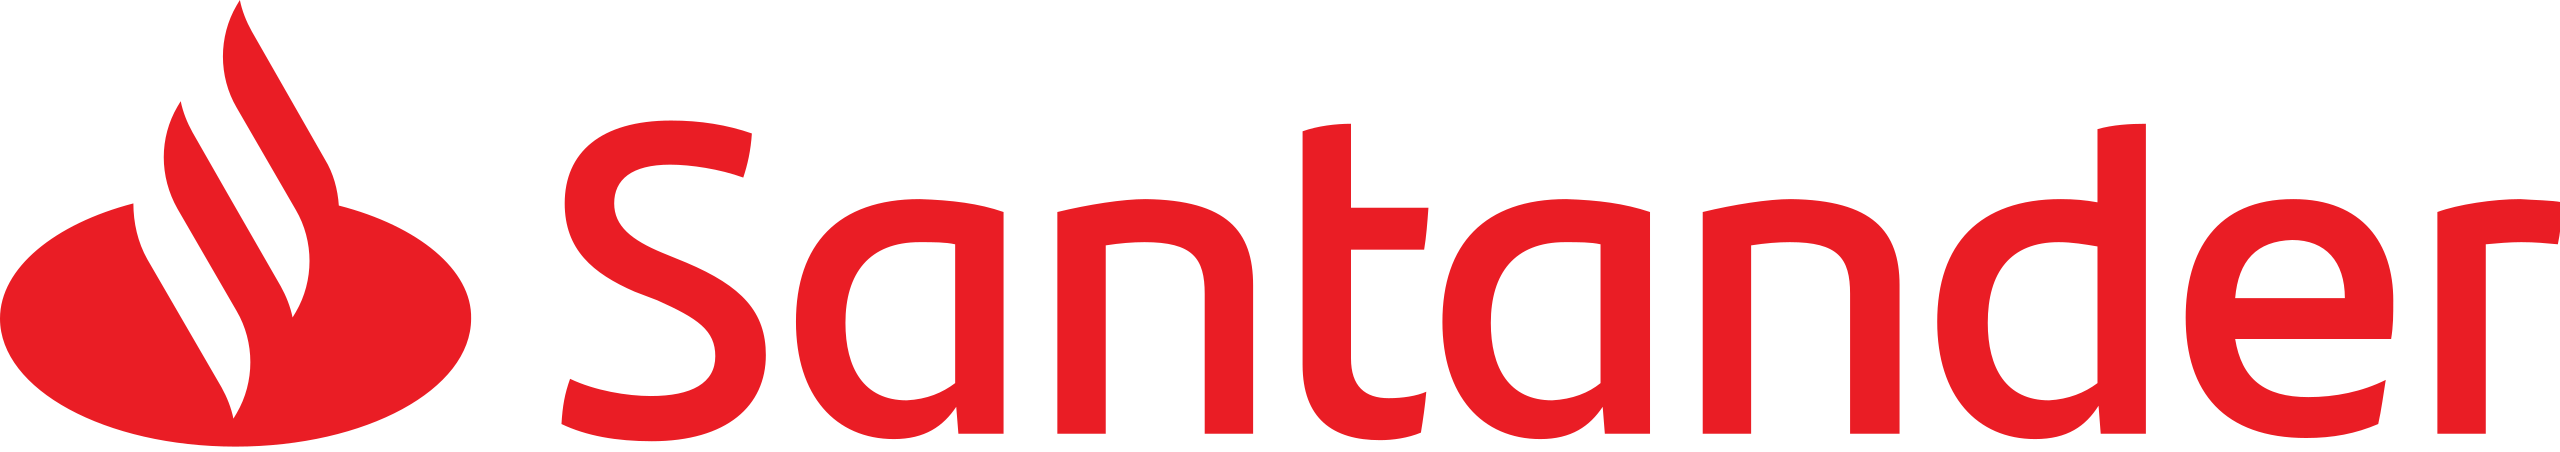 Banco Santander Logotipo.svg